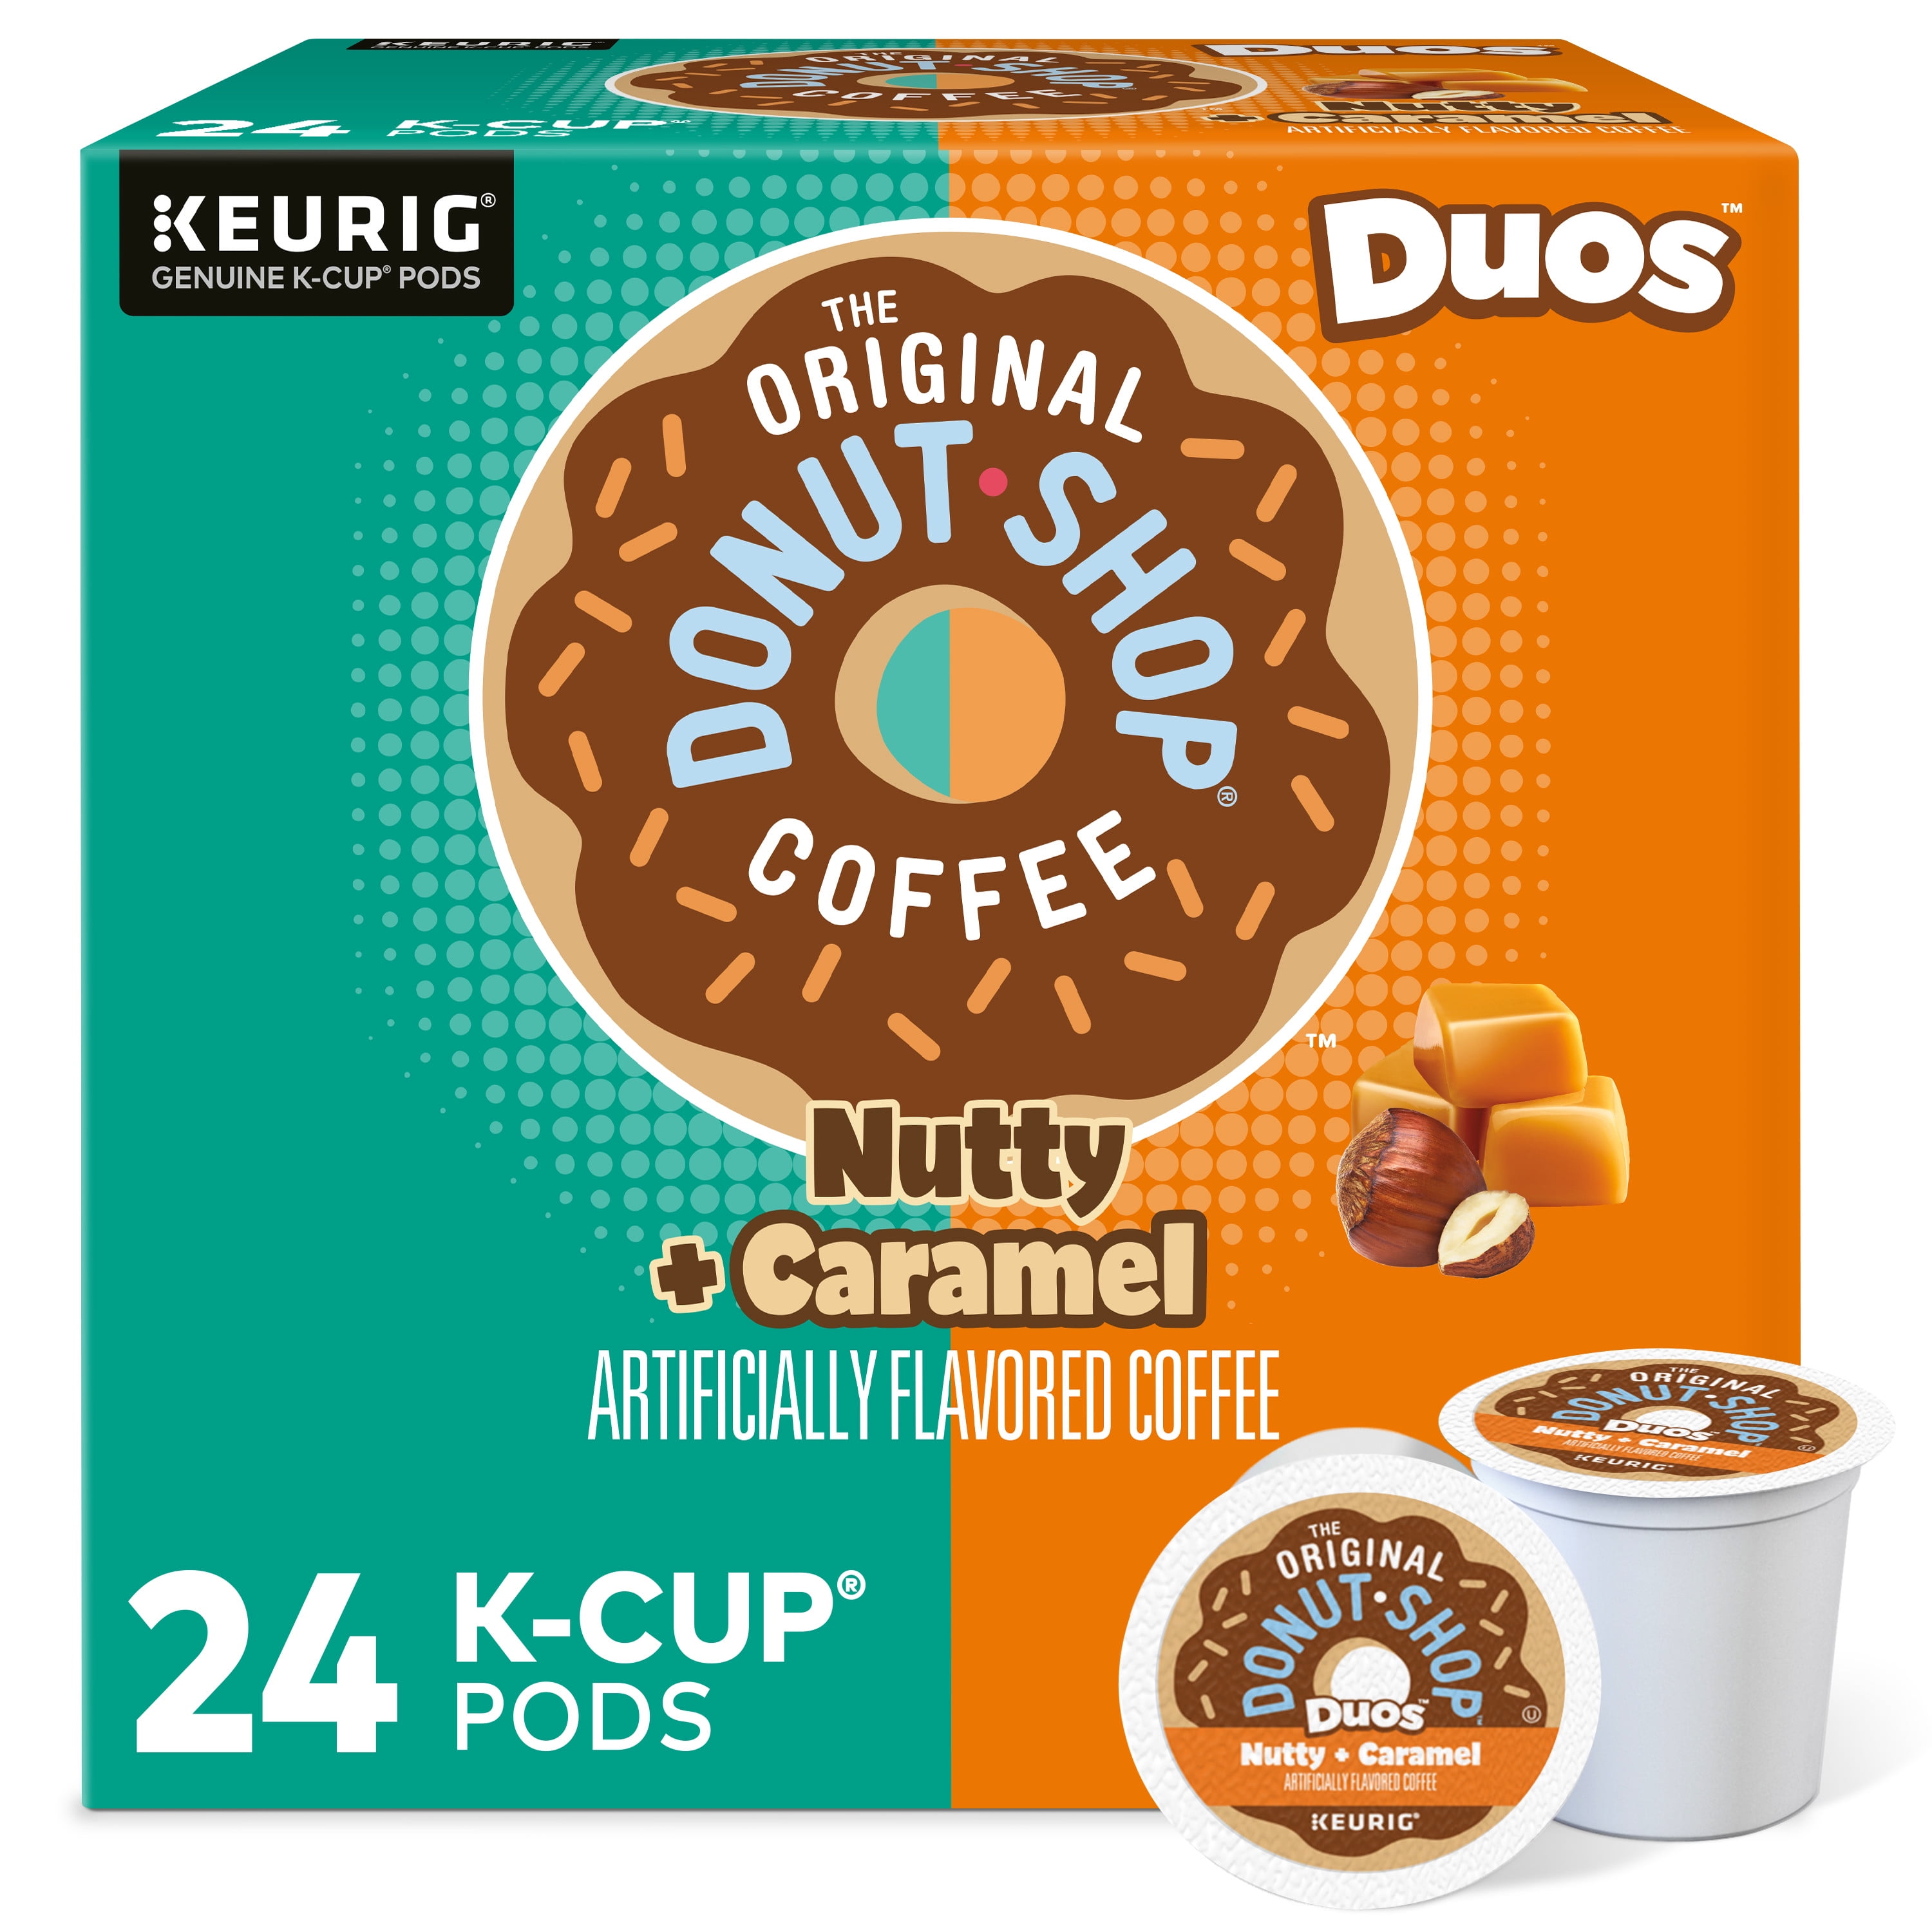 møbel Recept Periodisk The Original Donut Shop Duos Nutty + Caramel Keurig Single-Serve K-Cup Pods,  Medium Roast Coffee, 24 Count - Walmart.com